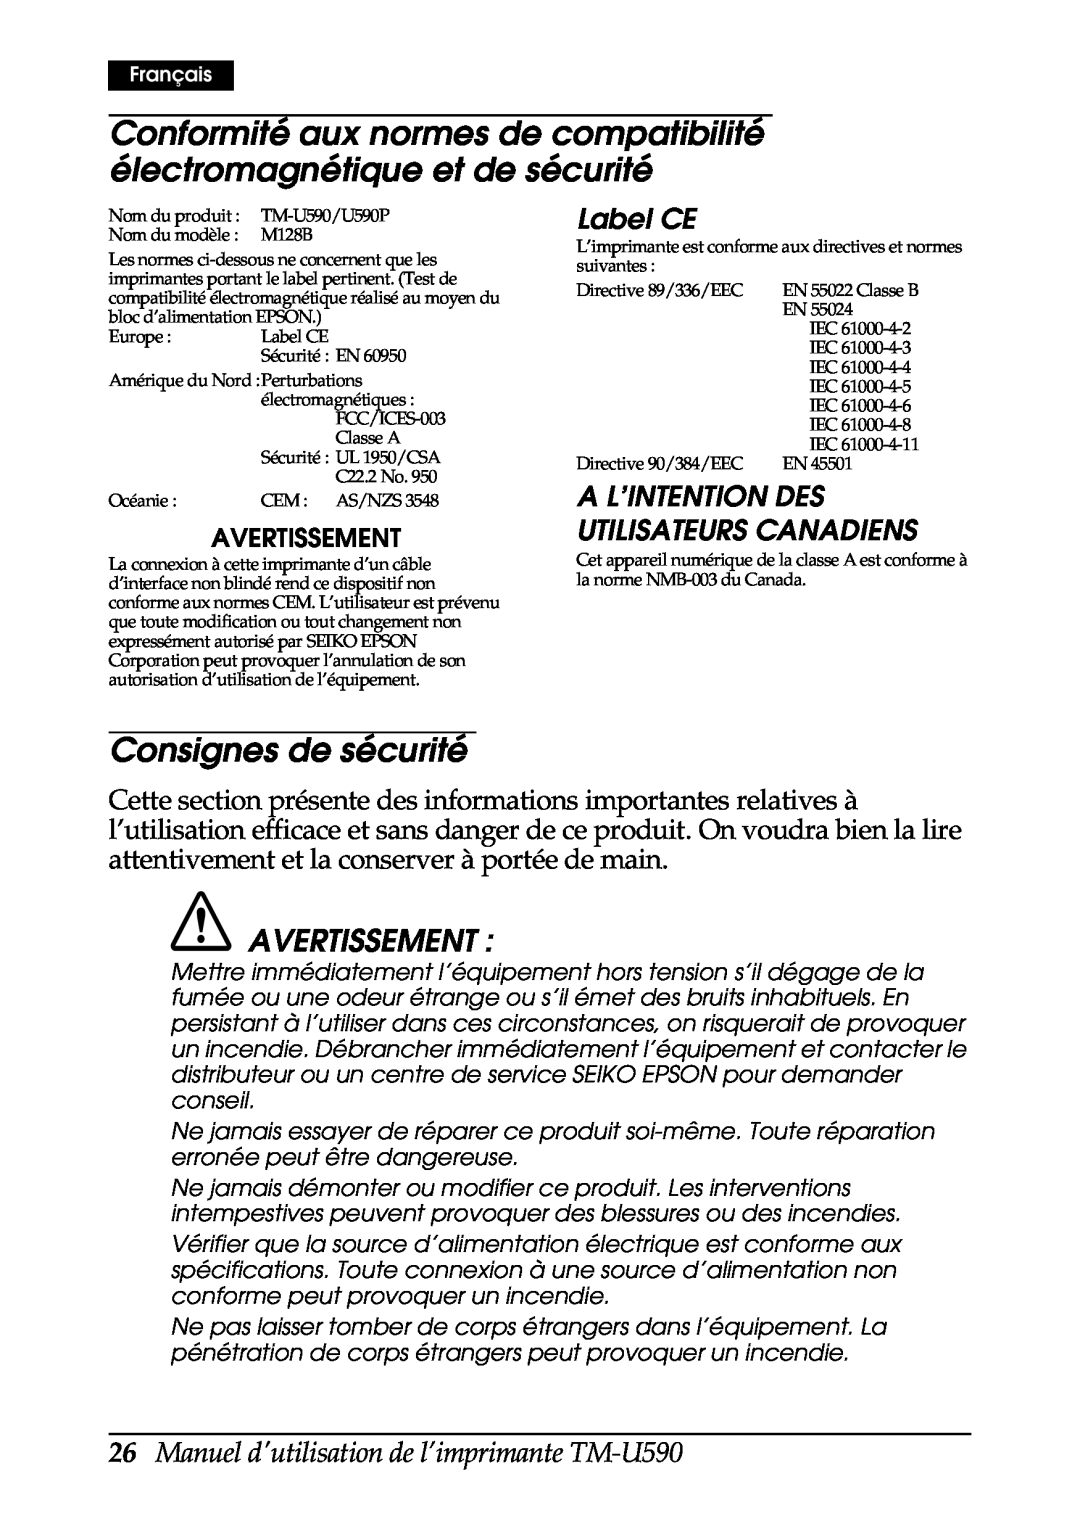 FARGO electronic user manual Consignes de sécurité, Avertissement, Label CE, Manuel dutilisation de l’imprimante TM-U590 